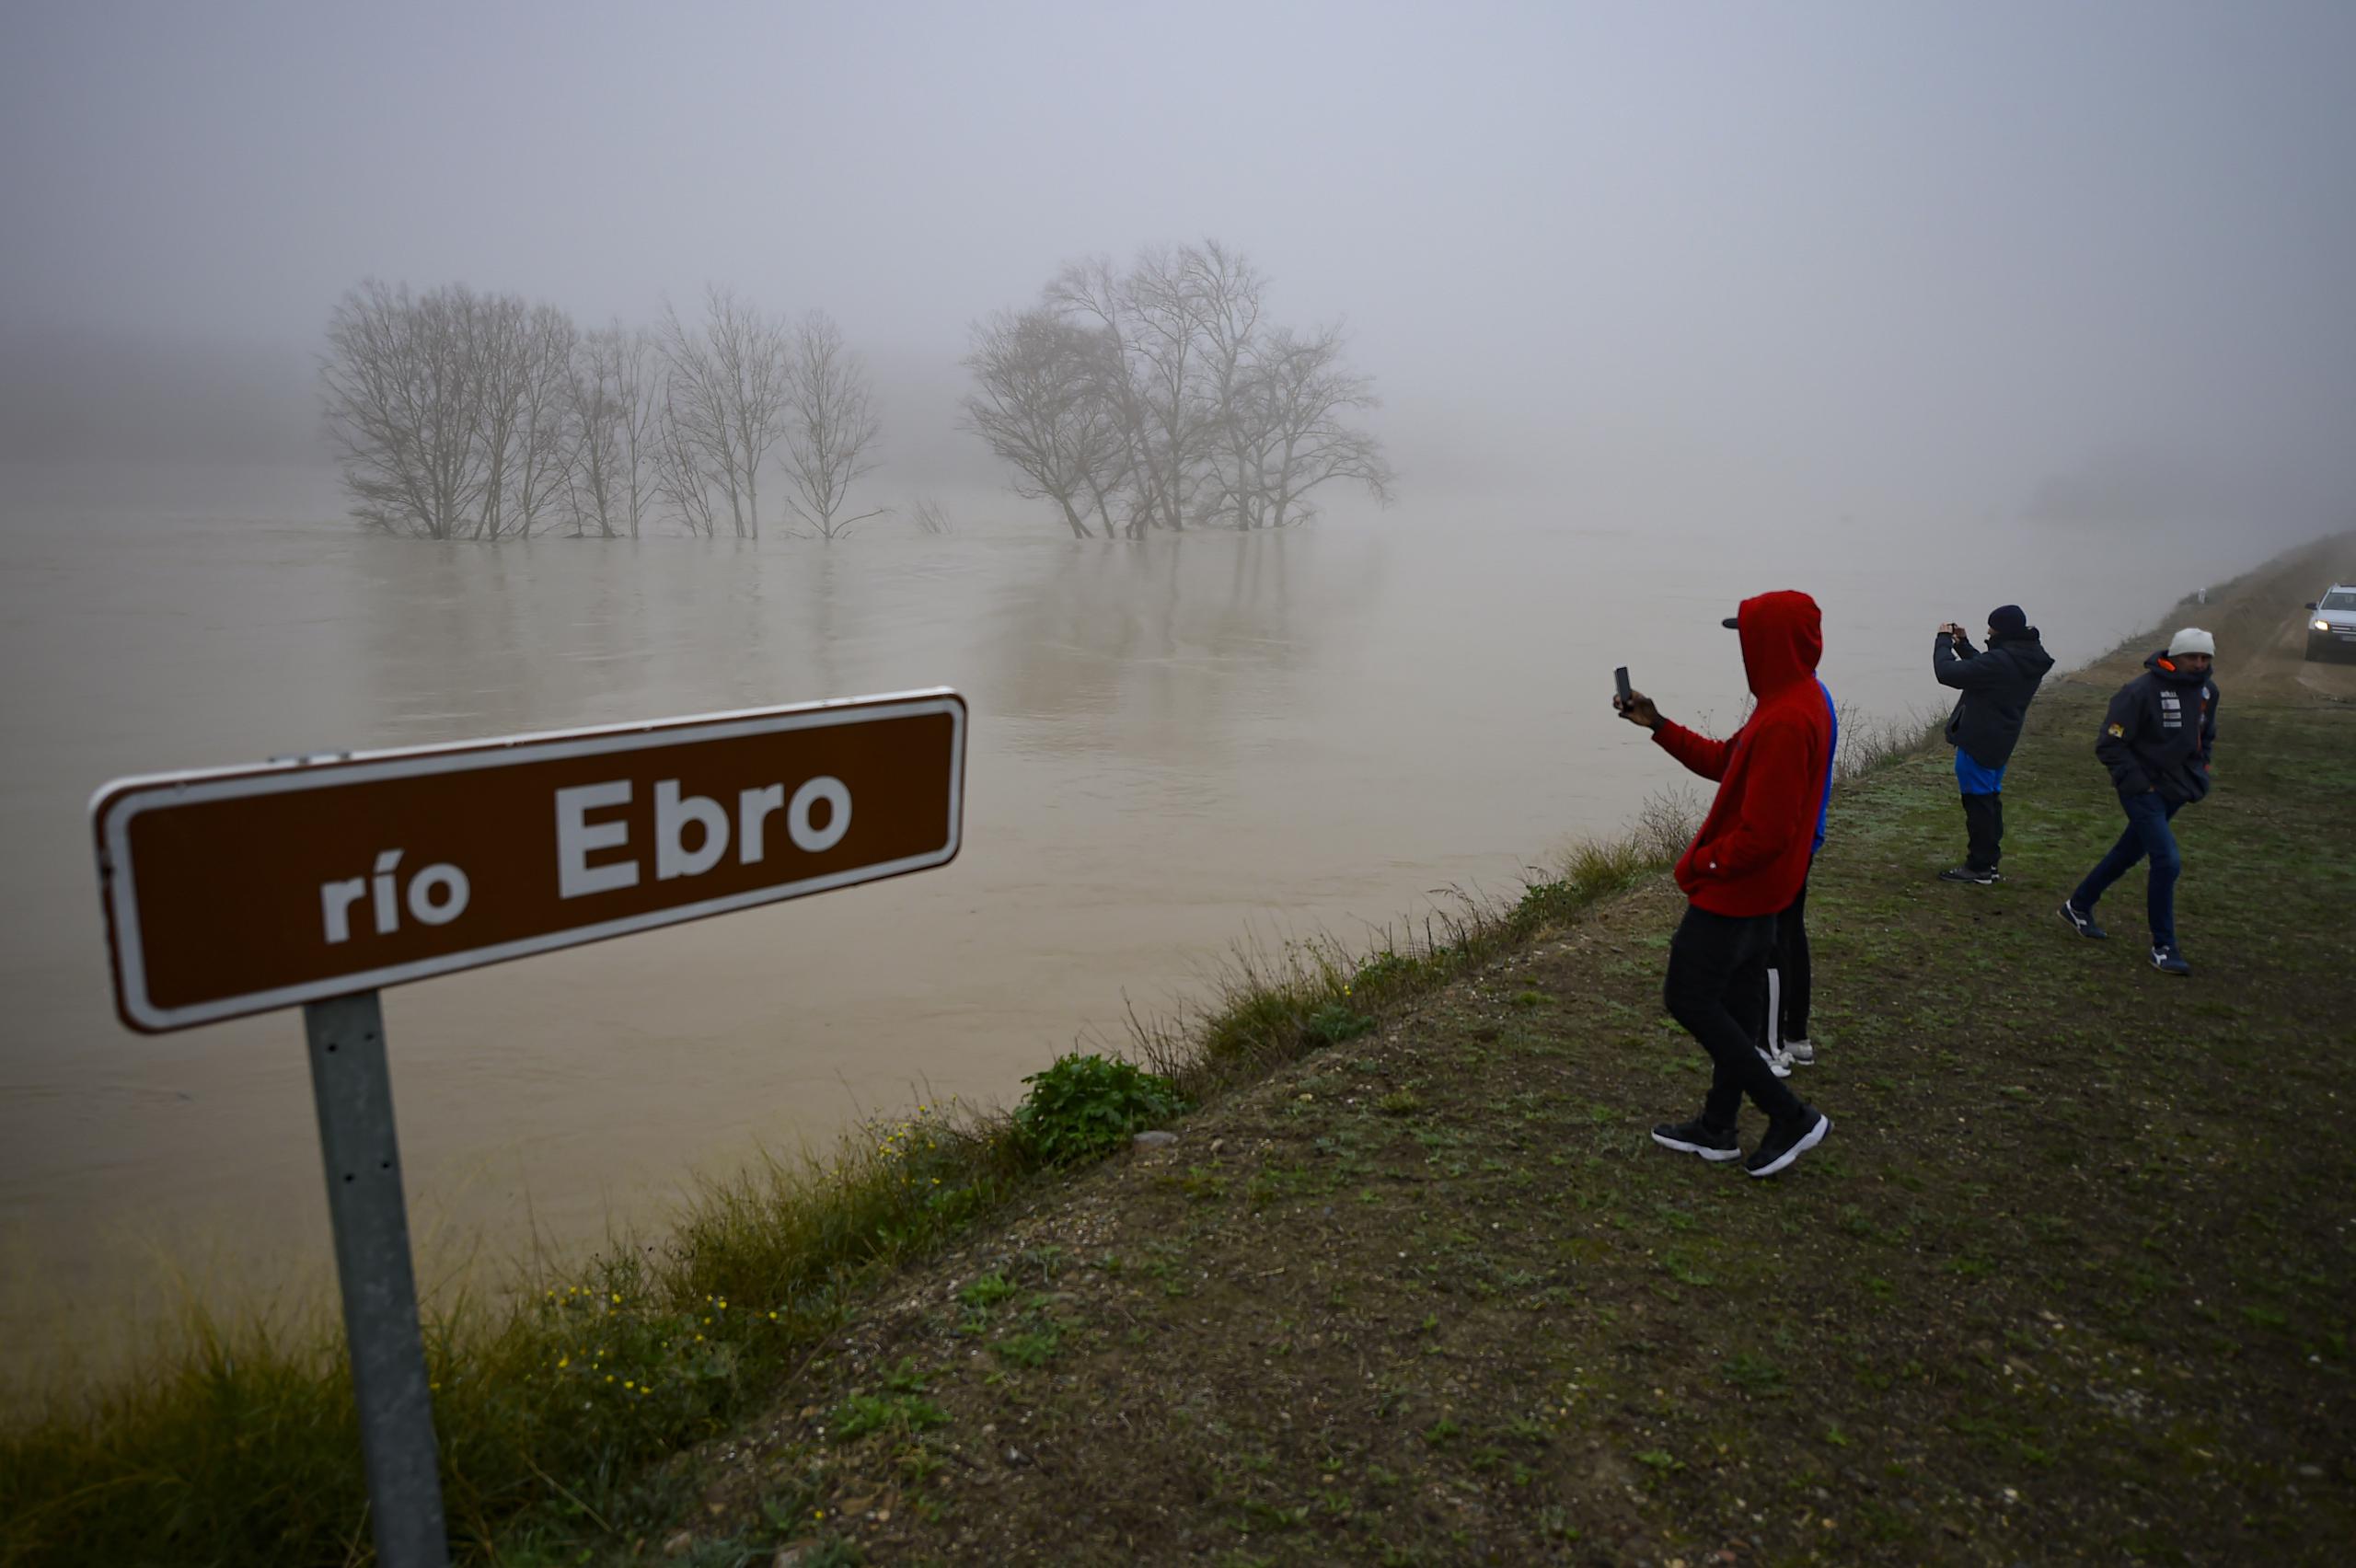 Personas en la zona inundada cerca del río Ebro en el pequeño pueblo de Pradilla de Ebro, provincia de Aragón, en el norte de España, el lunes 13 de diciembre de 2021. Las fuertes lluvias provocaron inundaciones en el norte de España. (Foto AP / Alvaro Barrientos)